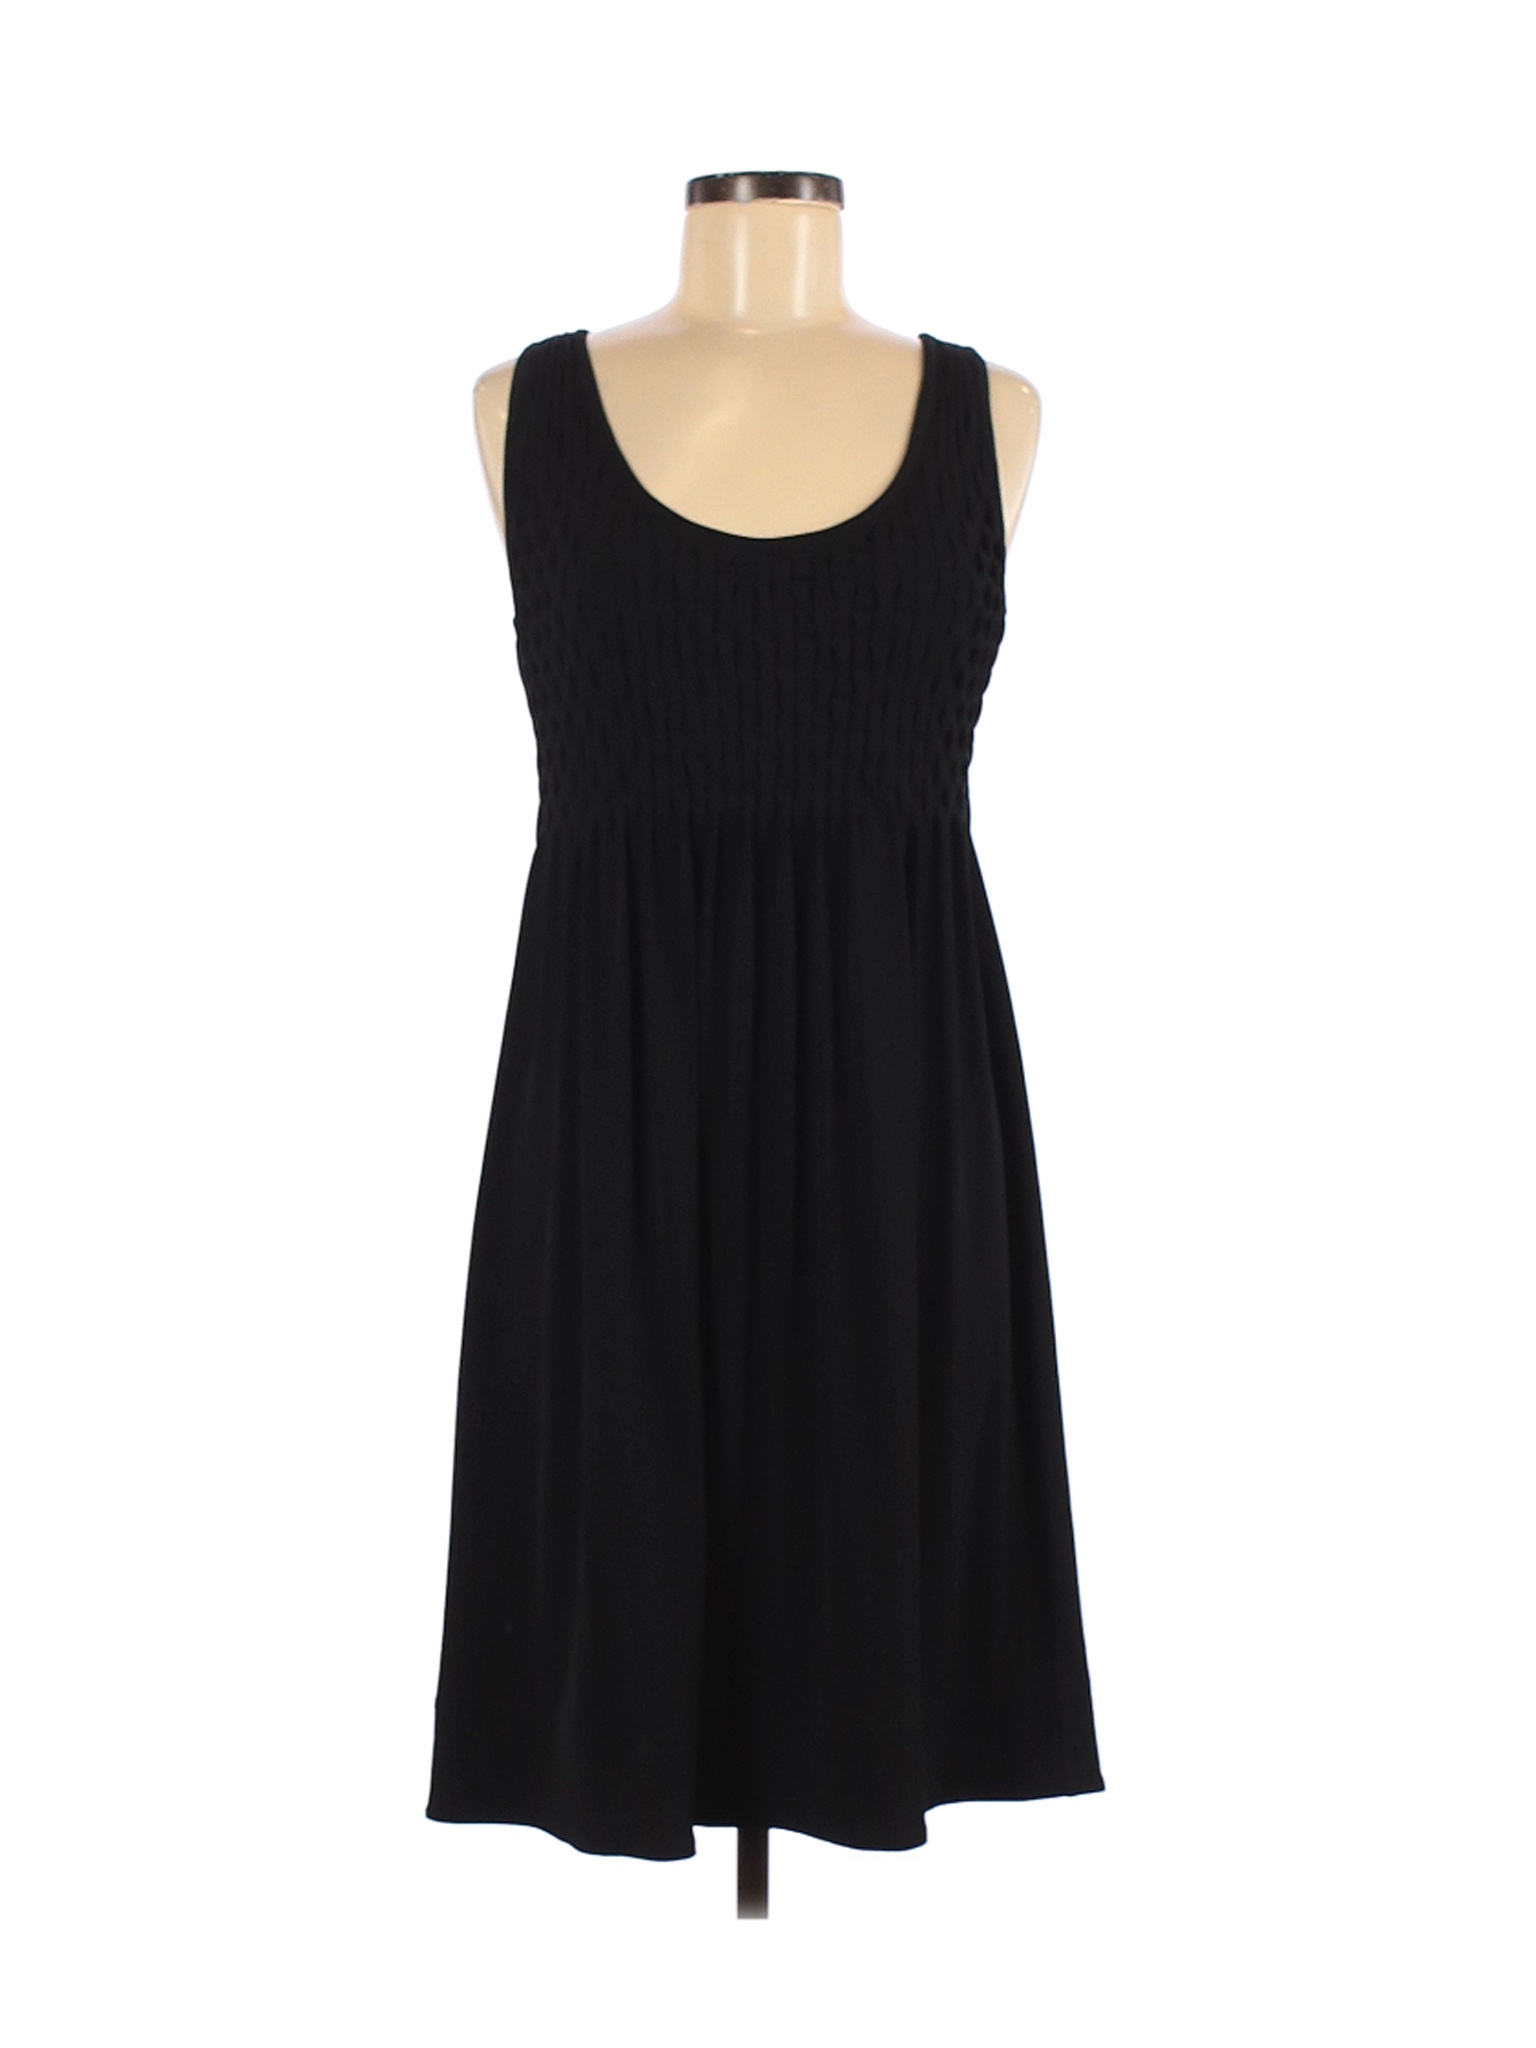 Saks Fifth Avenue Women Black Casual Dress 8 | eBay